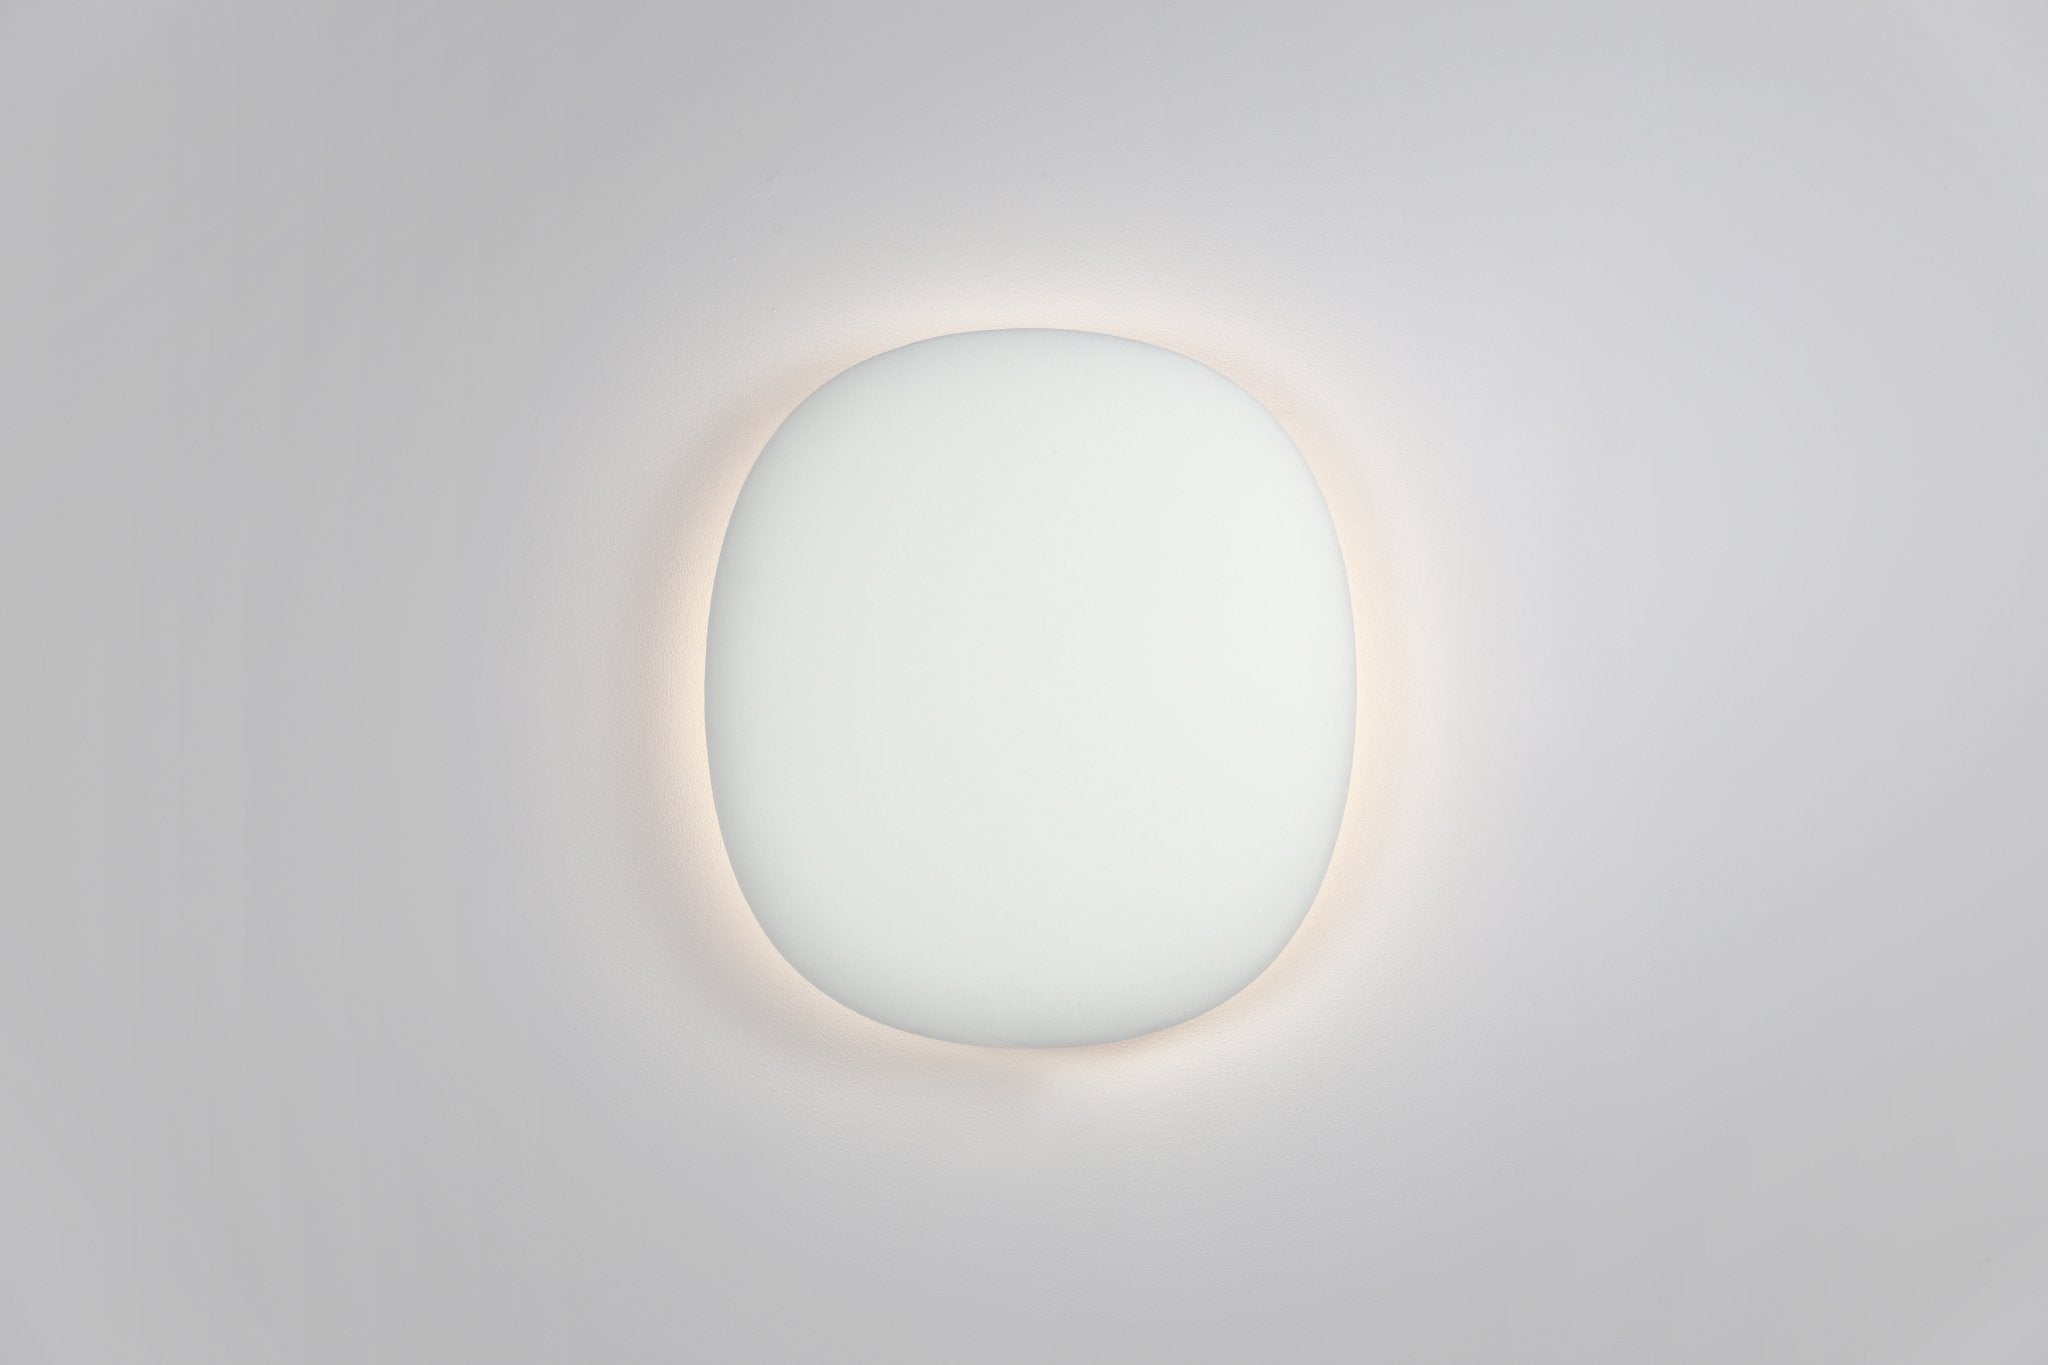 Wit lichtgevend akoestisch wandpaneel uit de Blossom collectie van Bogaerts Label